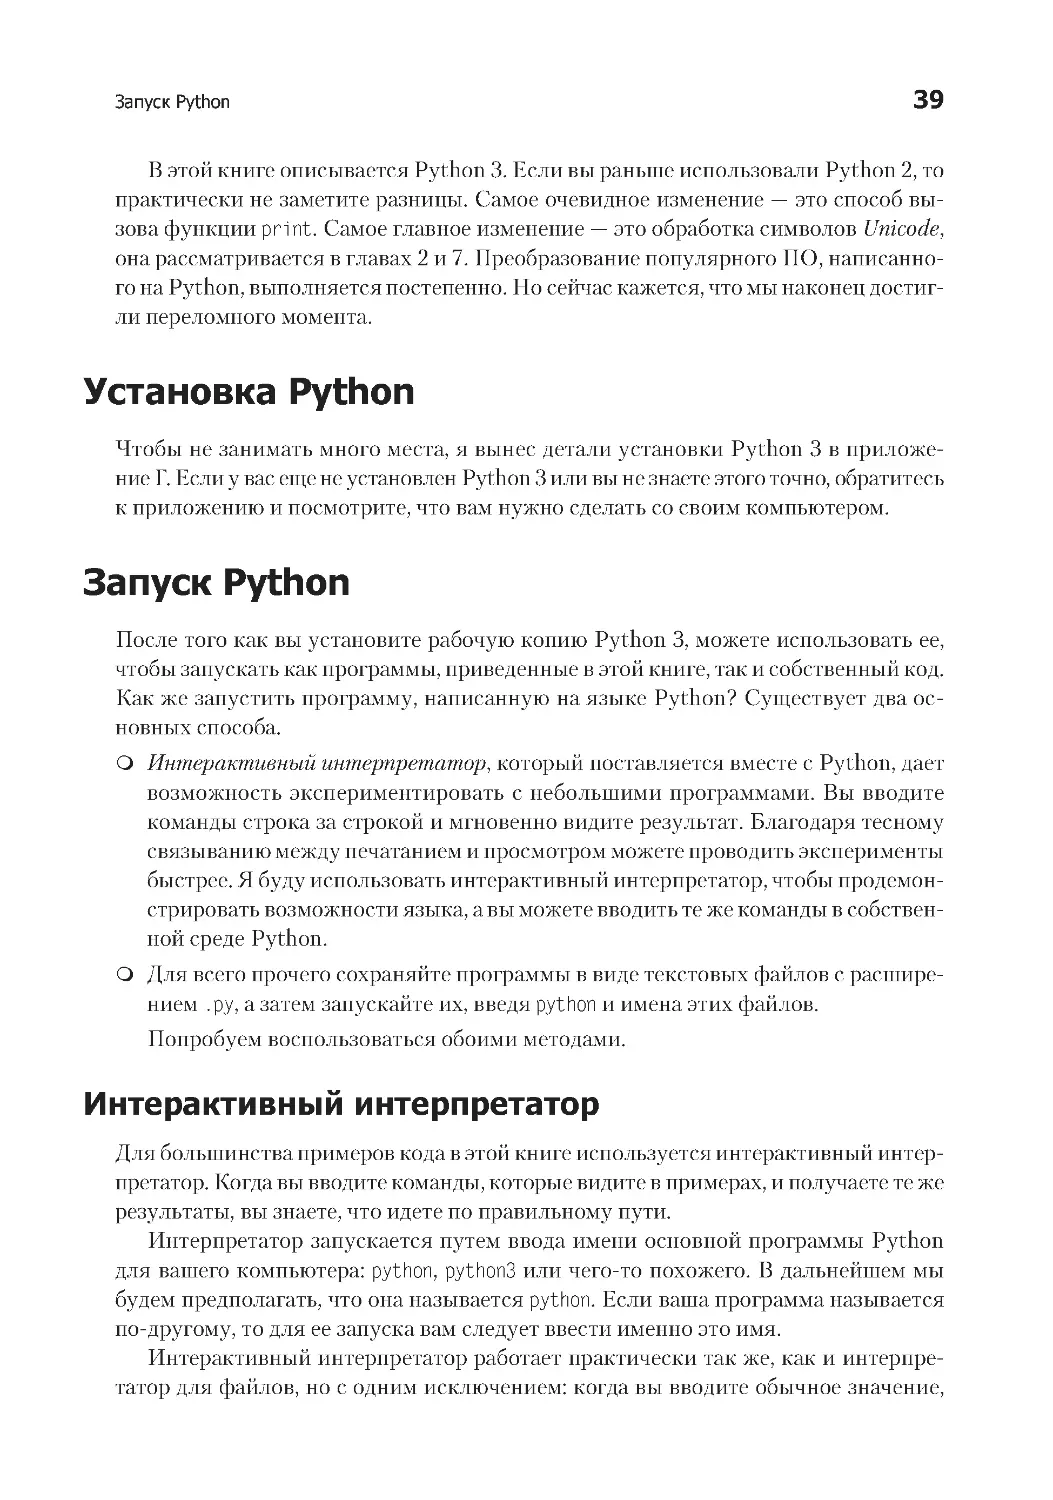 Установка Python
Запуск Python
Использование интерактивного интерпретатора